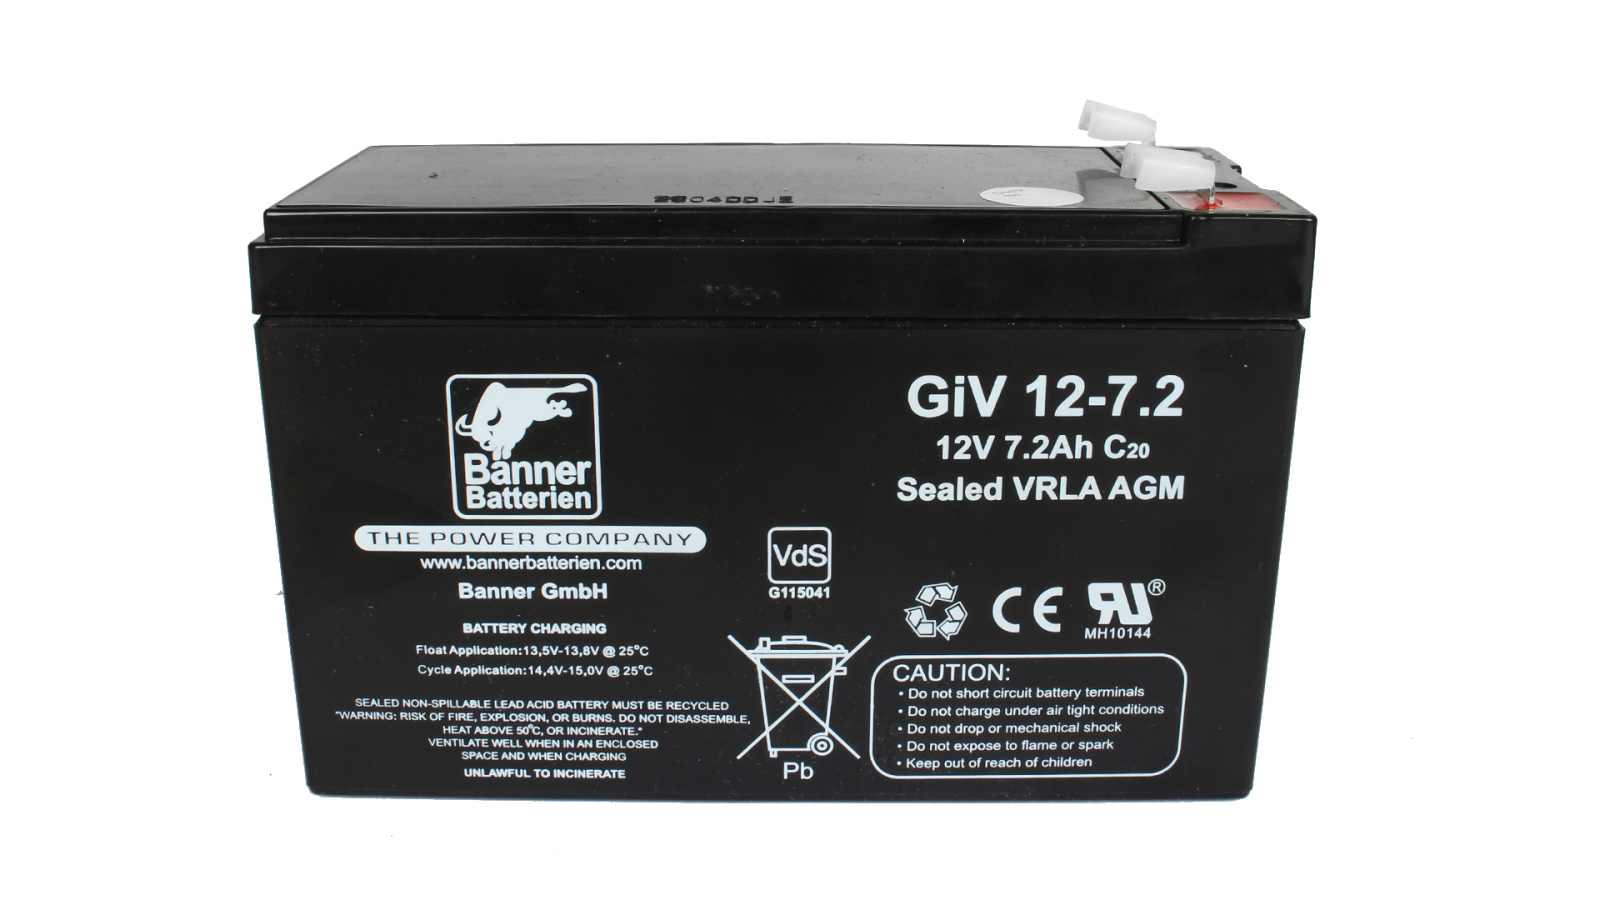 Аккумуляторная батарея BANNER GiV 12- 7.2 Австрия 151x65x99 фотография №1